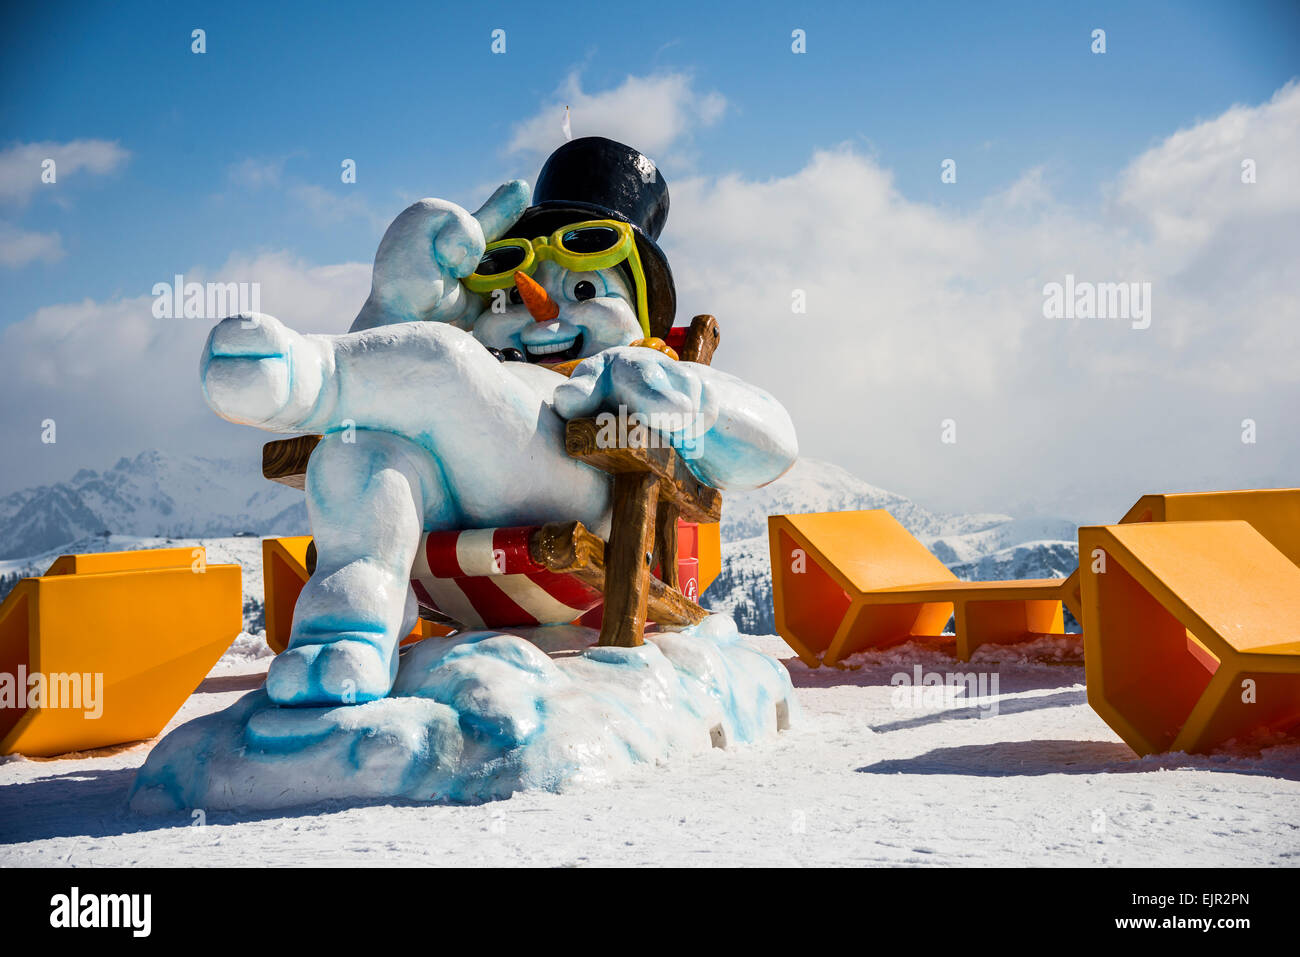 Schneemann mit Sonnenbrille und einem Zylinder sitzt in einem Liegestuhl, ski Resort, Zauchenseee, Flachauwinkel Pongau, Salzburg, Österreich Stockfoto